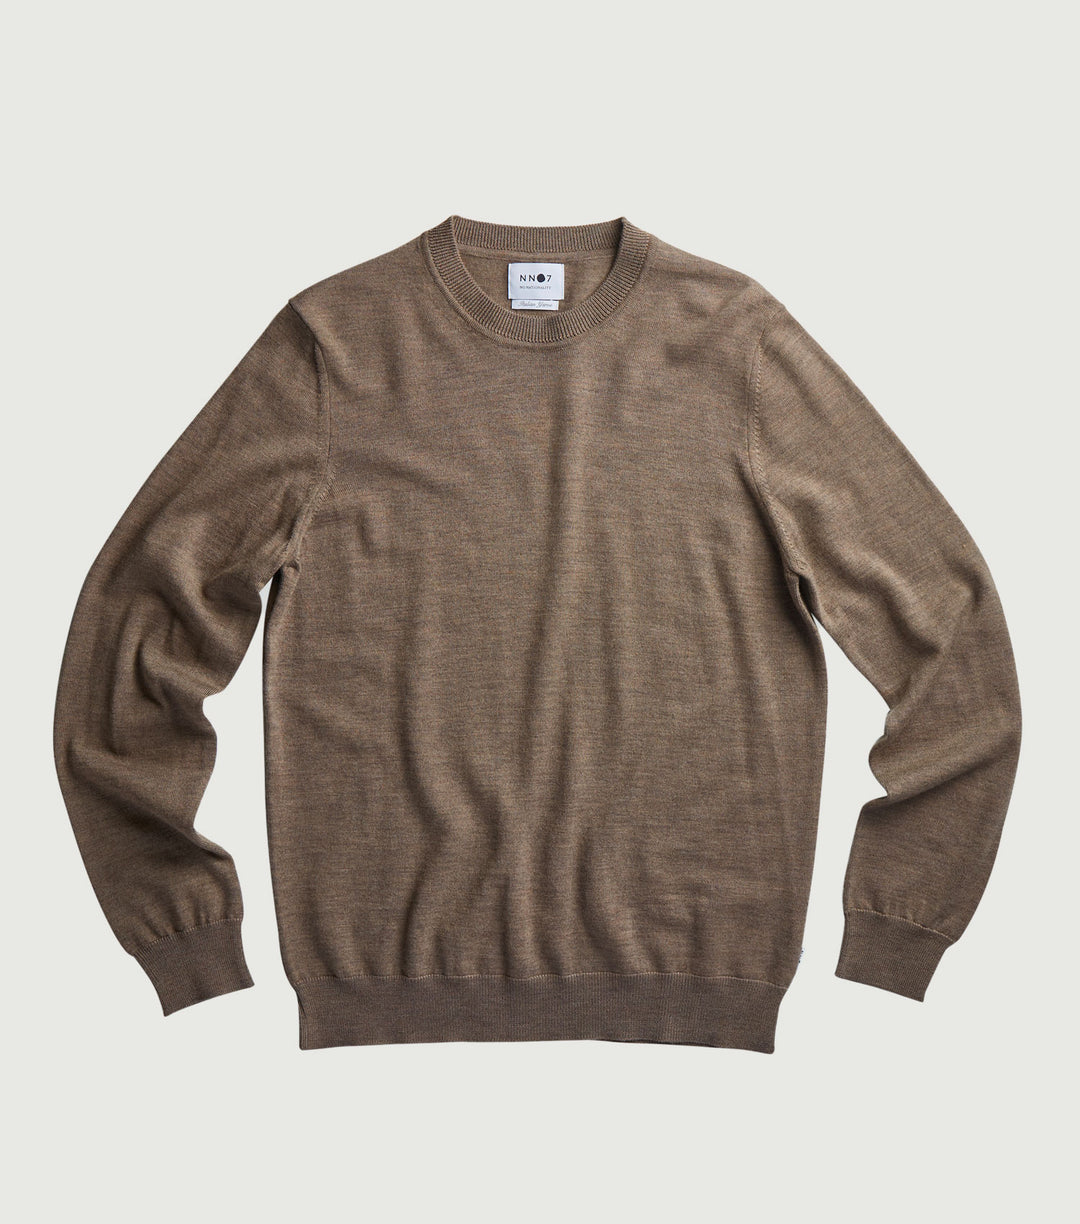 Ted Stone Merino Sweater 6328 - NN.07